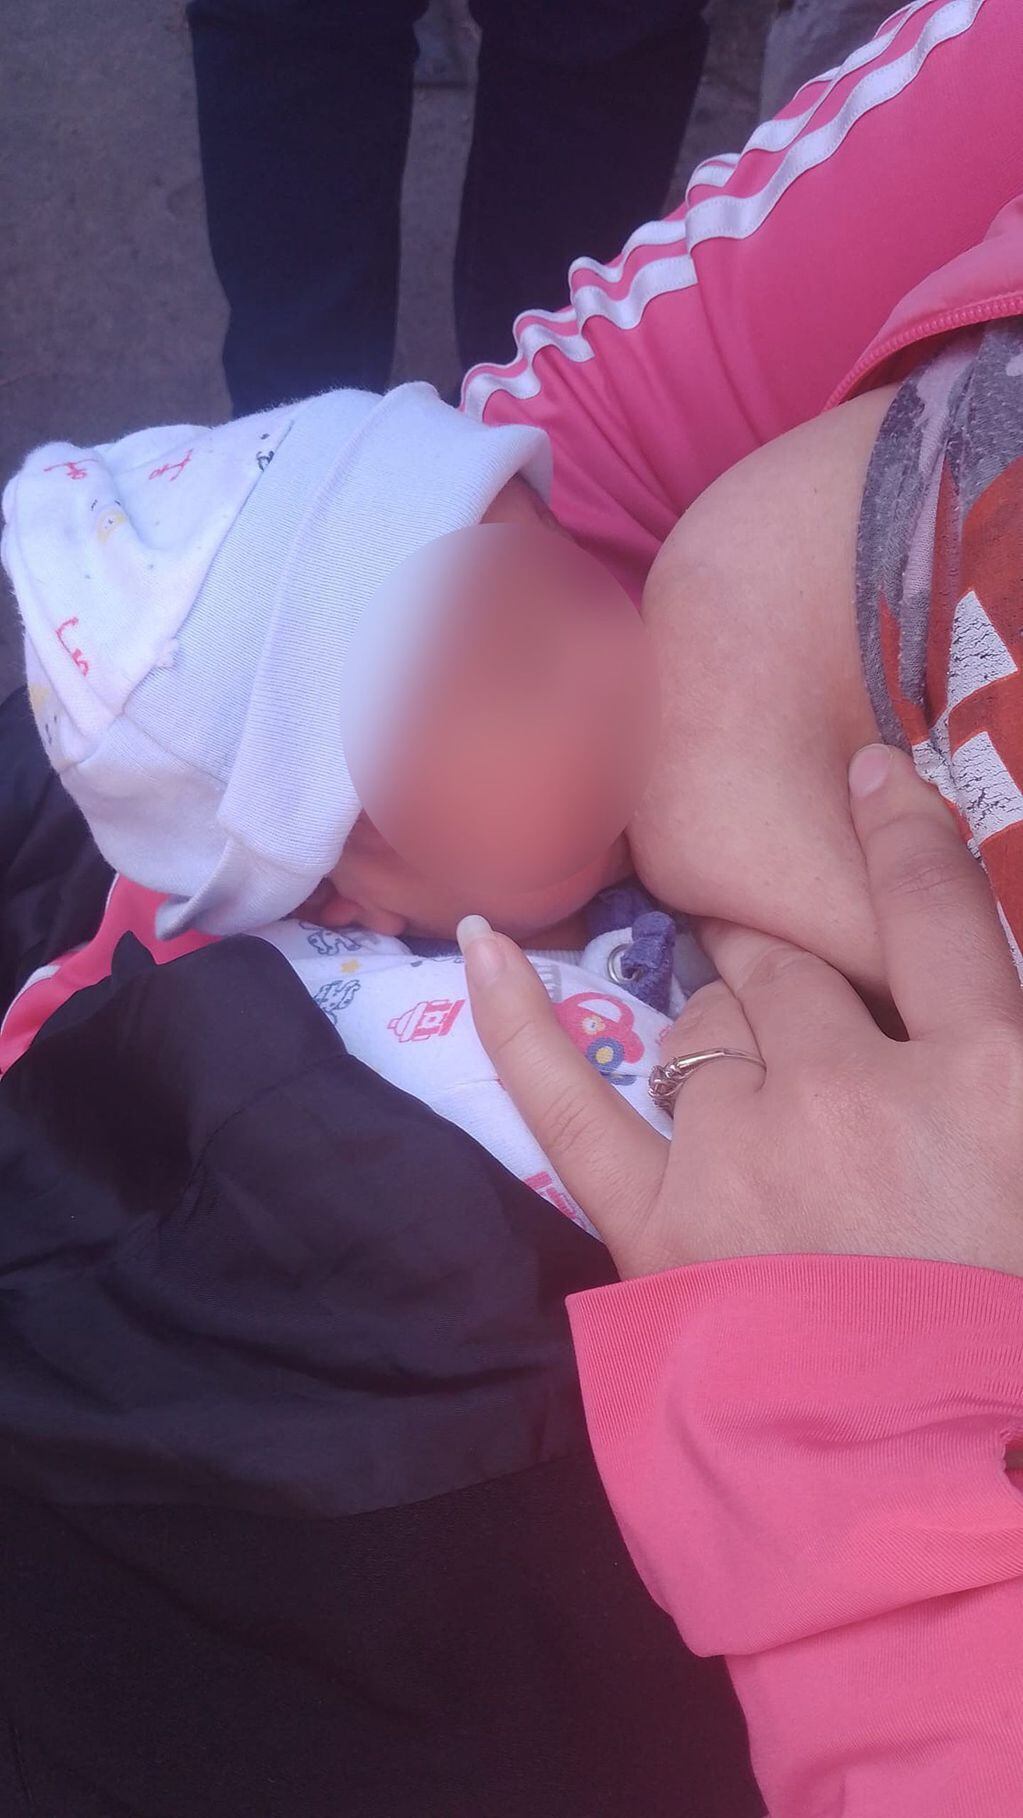 Una joven madre encontró a un bebé de 10 días que habían abandonado debajo de un auto. TN